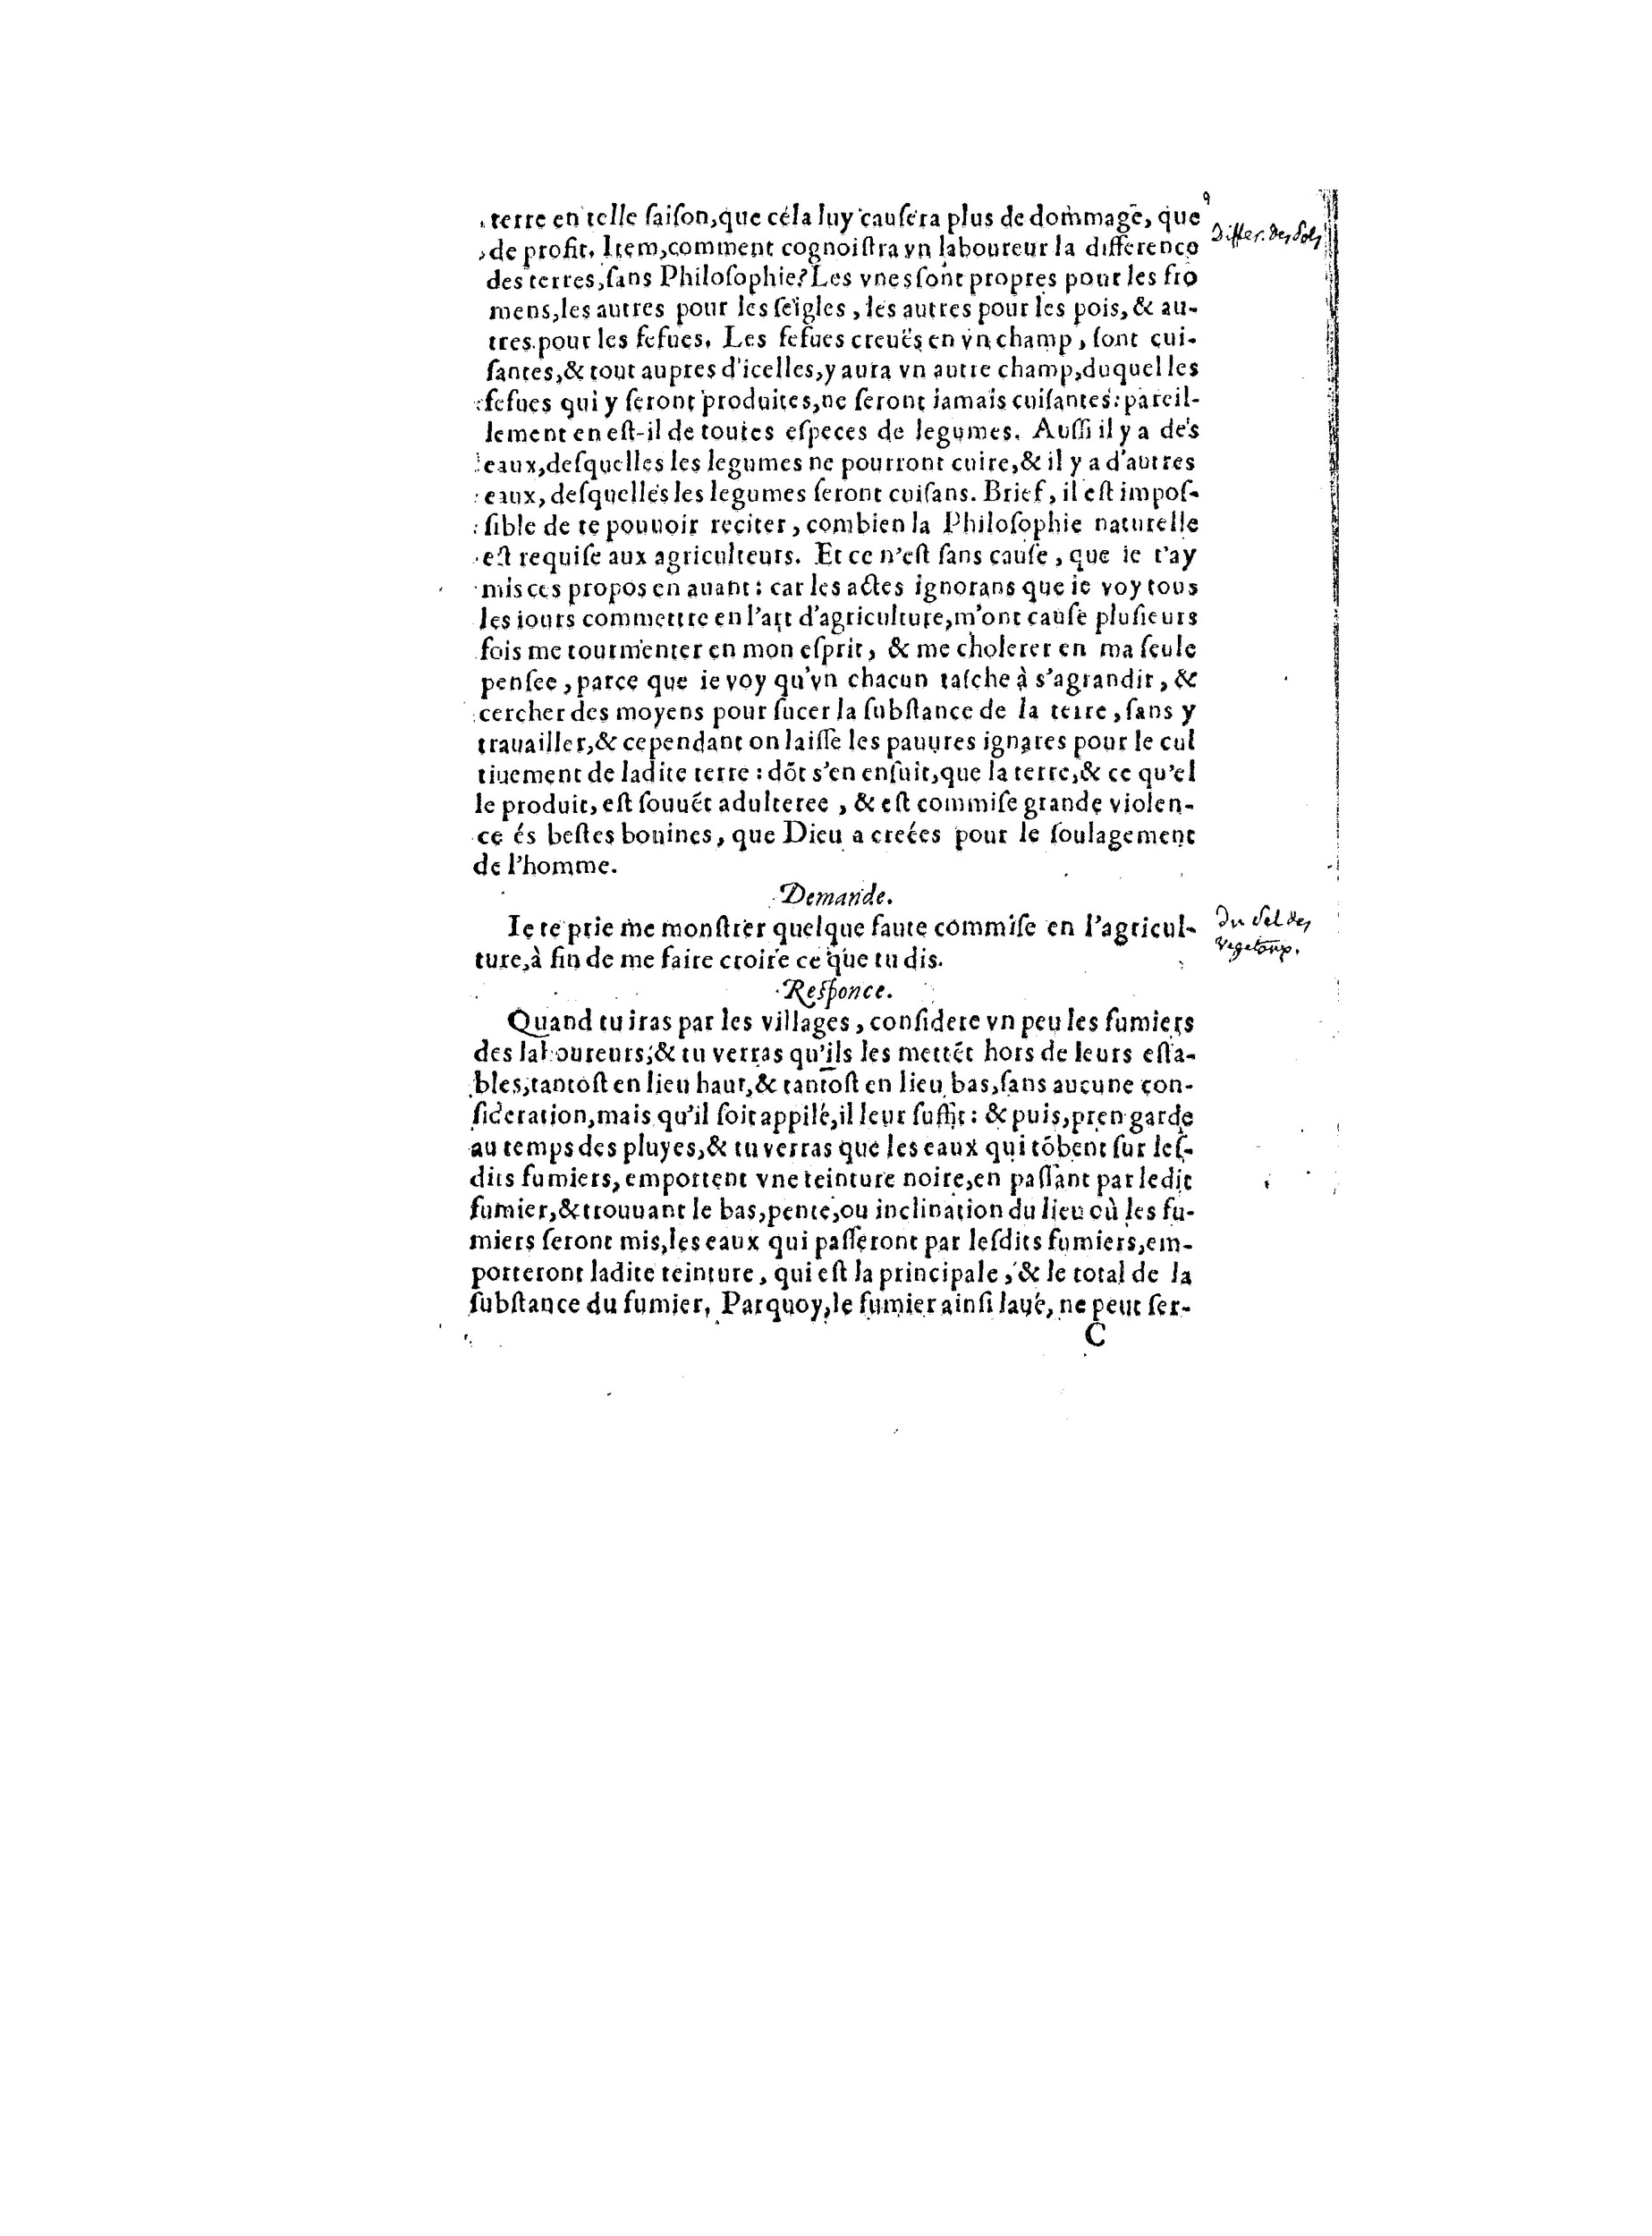 1563 Recepte veritable Berton_BNF_Page_020.jpg